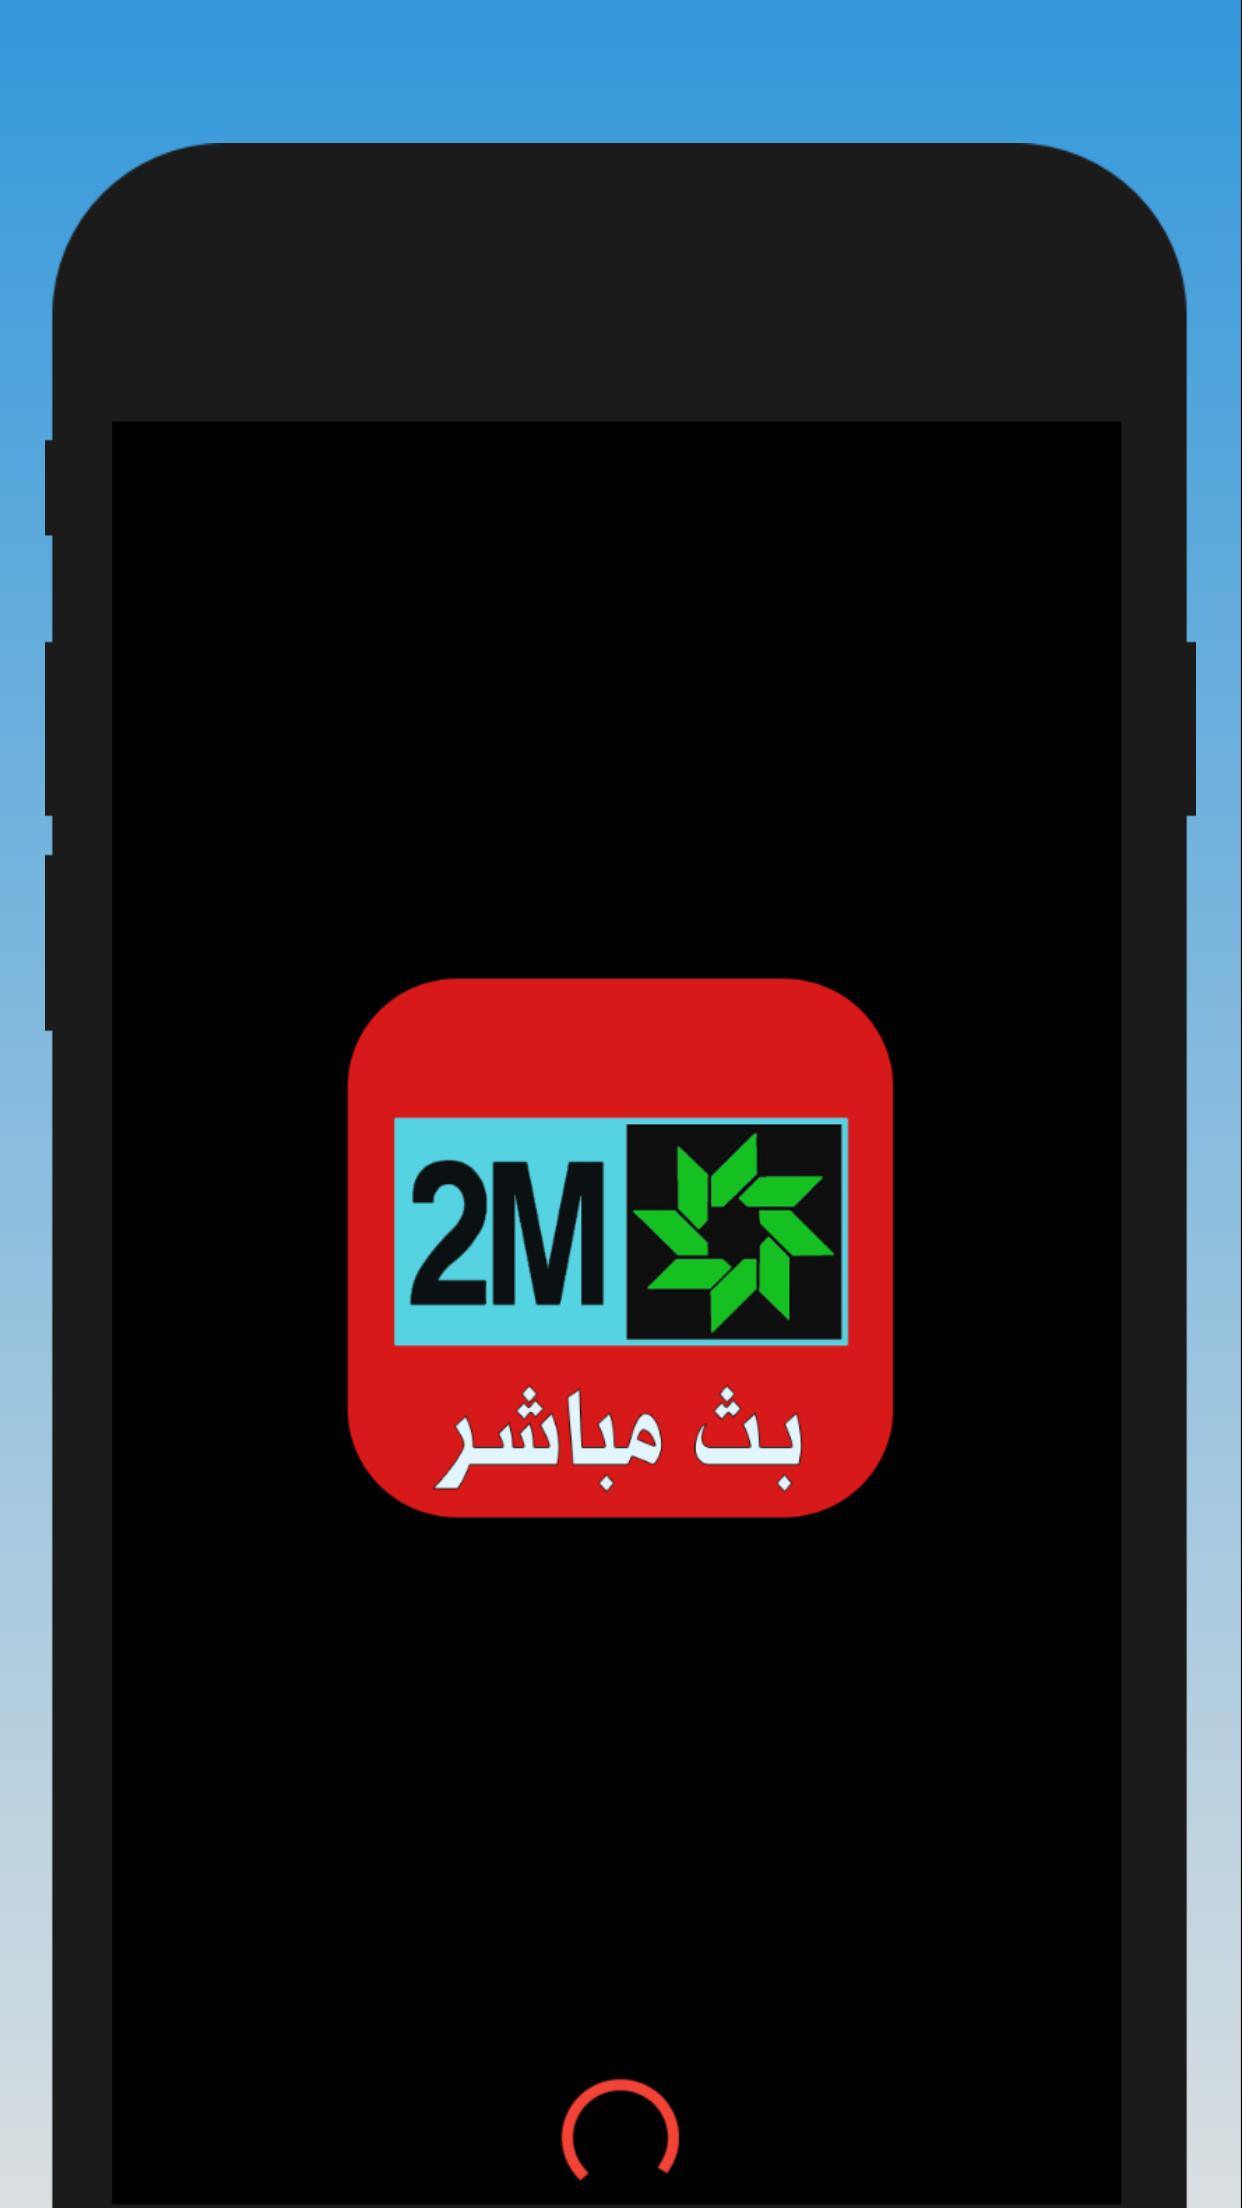 Descarga de APK de 2m maroc tv para Android